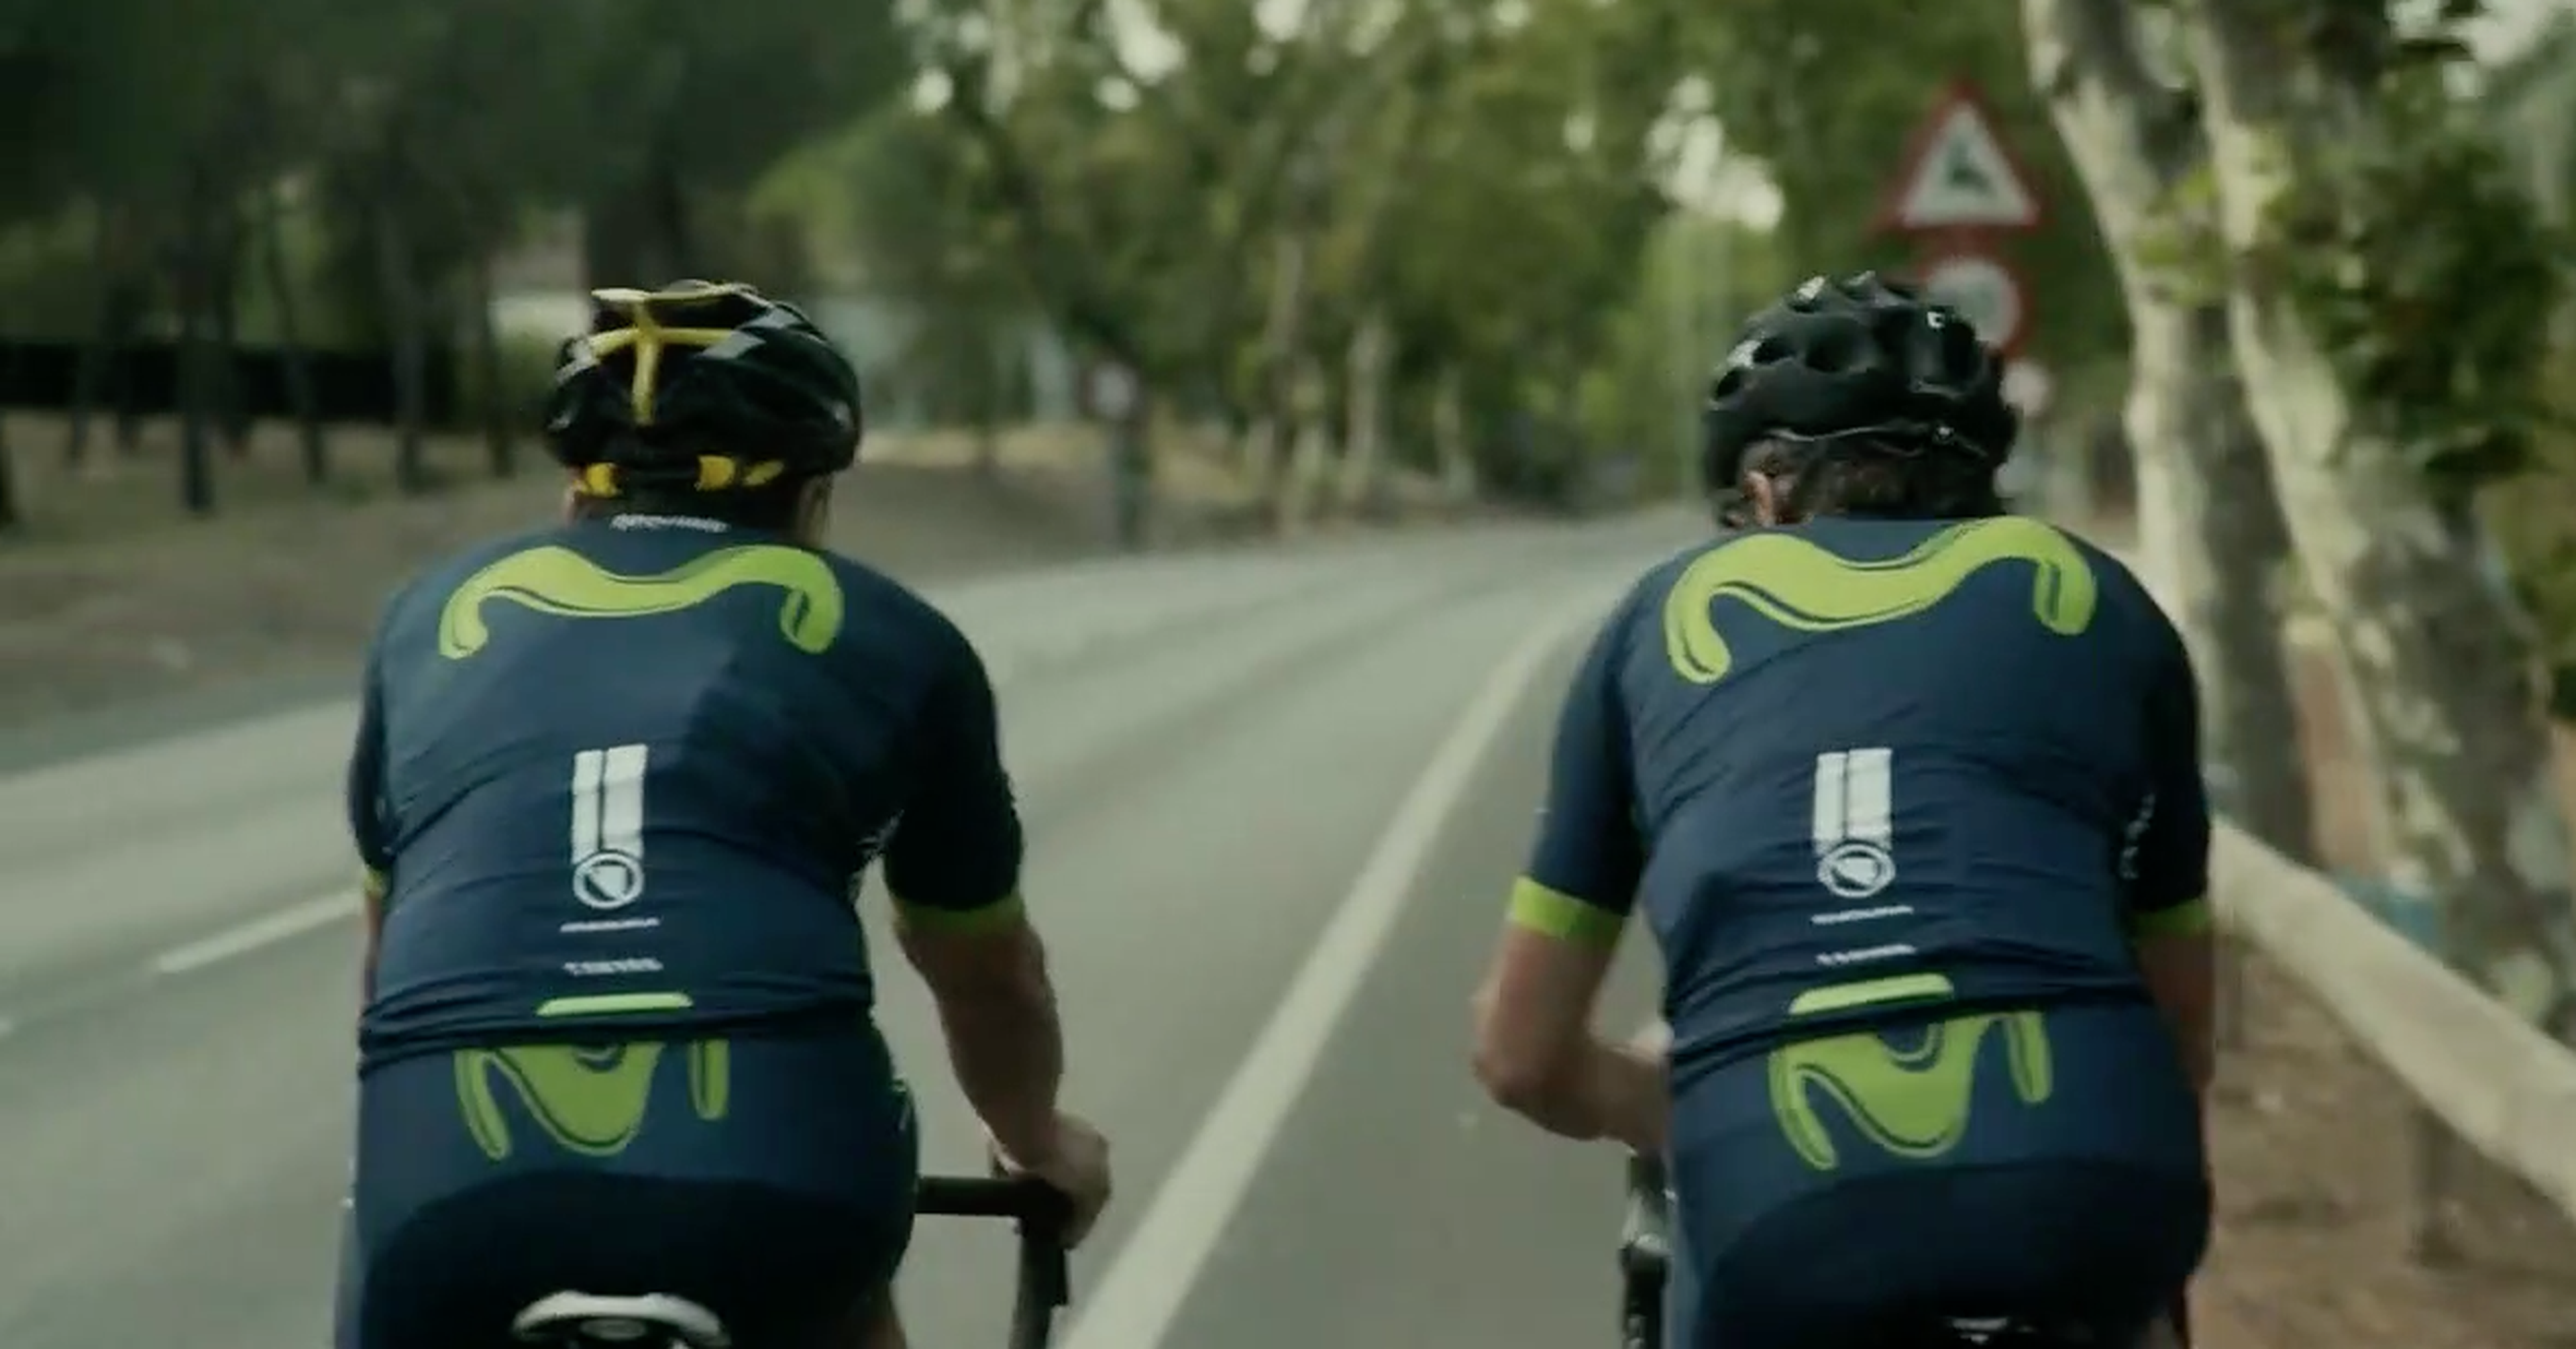 VÍDEO: ¿Pueden rodar los ciclistas en paralelo? ¡Compruébalo!